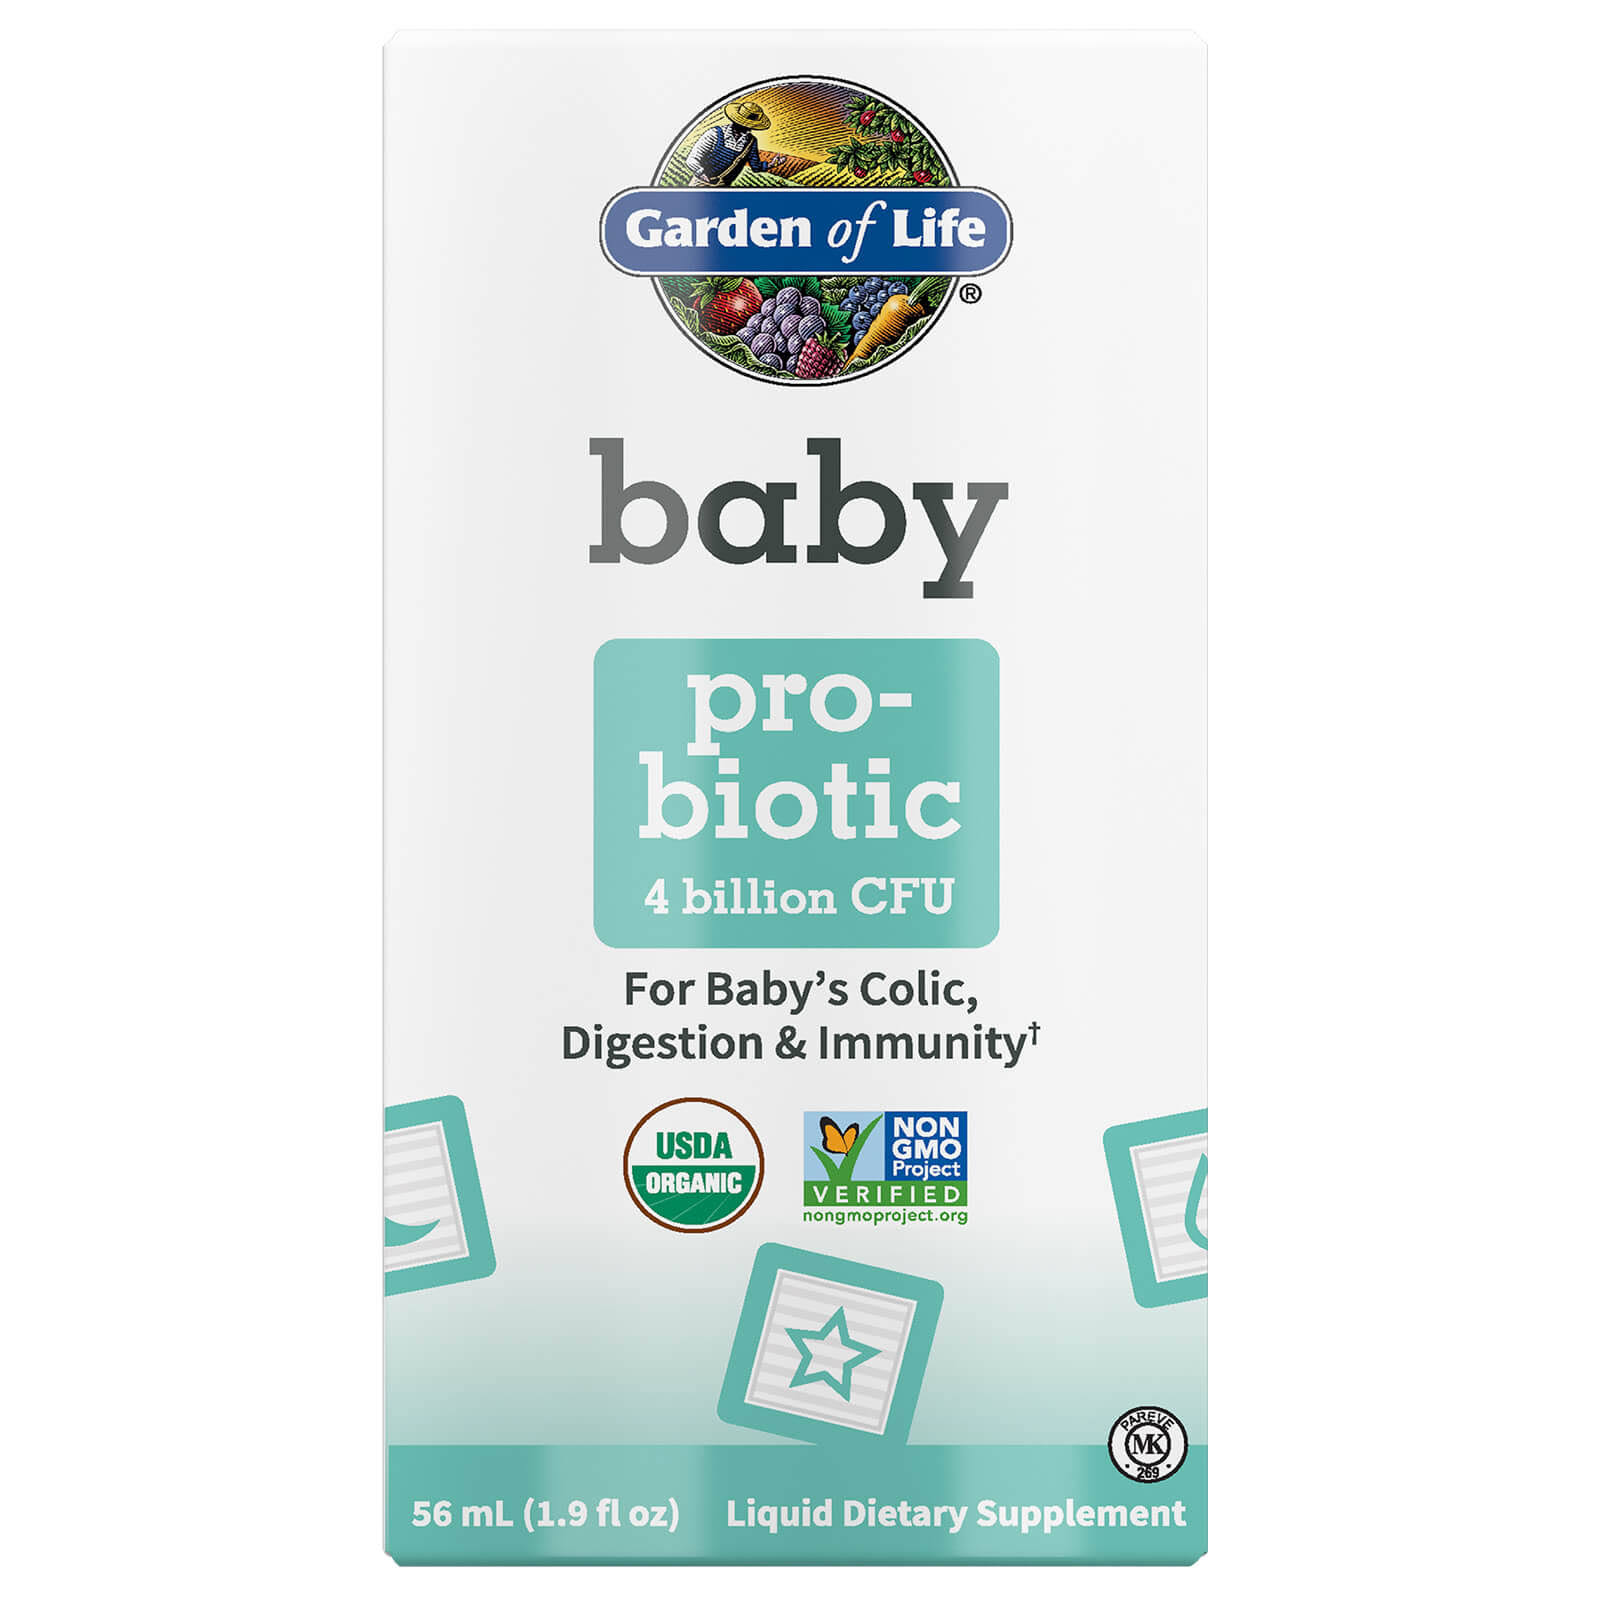 Garden of Life Baby Probiotic 4 Billion CFU 1.9 fl oz ( 56 ml)